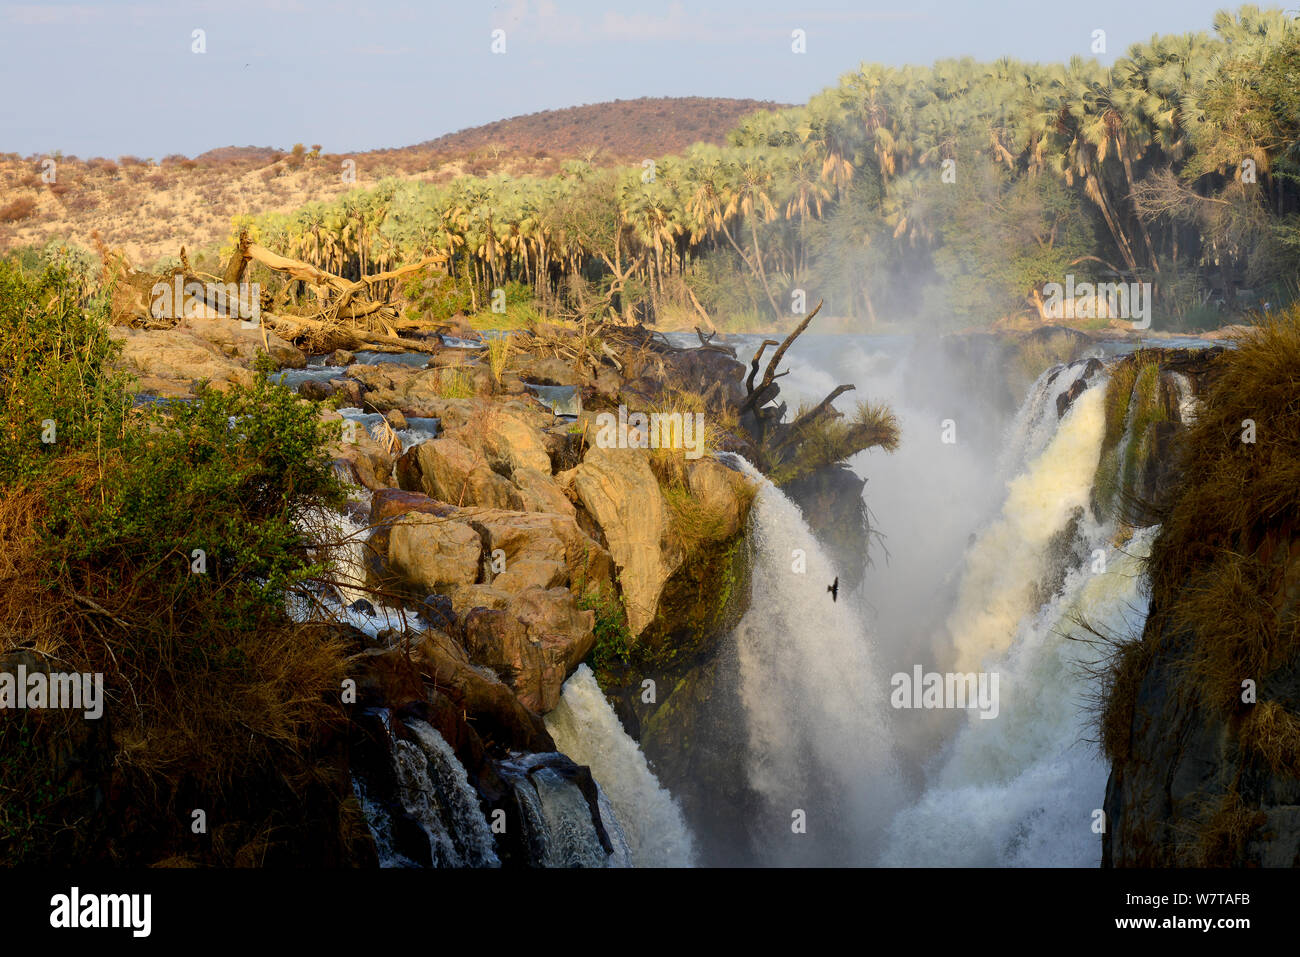 Epupa Falls sur la rivière Kunene, à la frontière entre la Namibie et l'Angola. Kaokoland, Namibie, septembre 2013. Banque D'Images